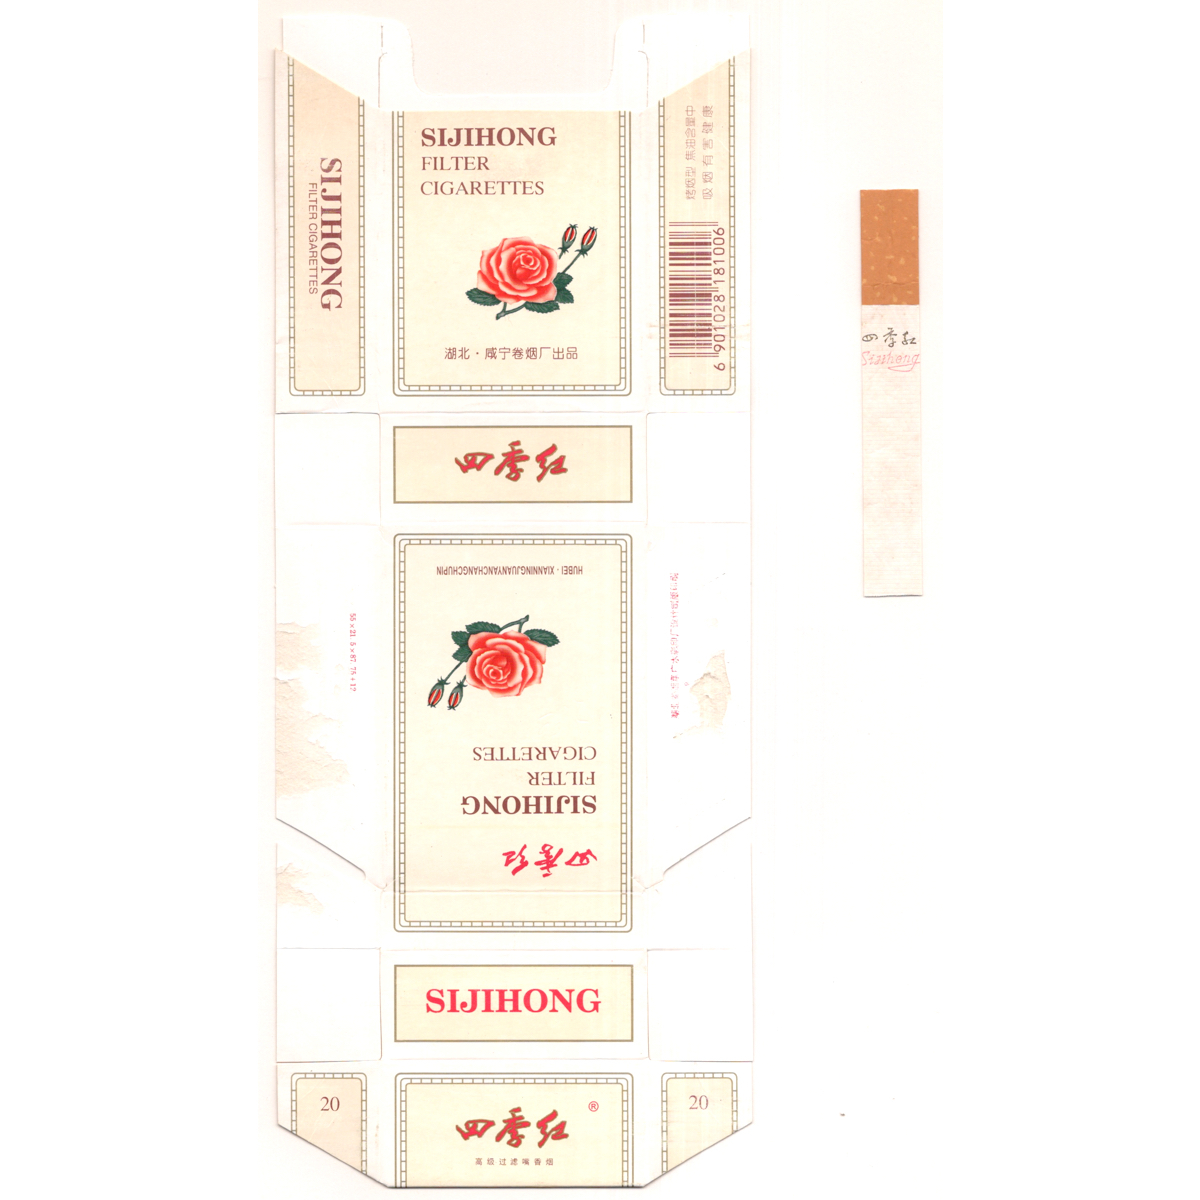 古い タバコ 煙草 ラベル パッケージ 中国 湖北 四季紅 SIJIHONG 台紙に貼り付け_画像1